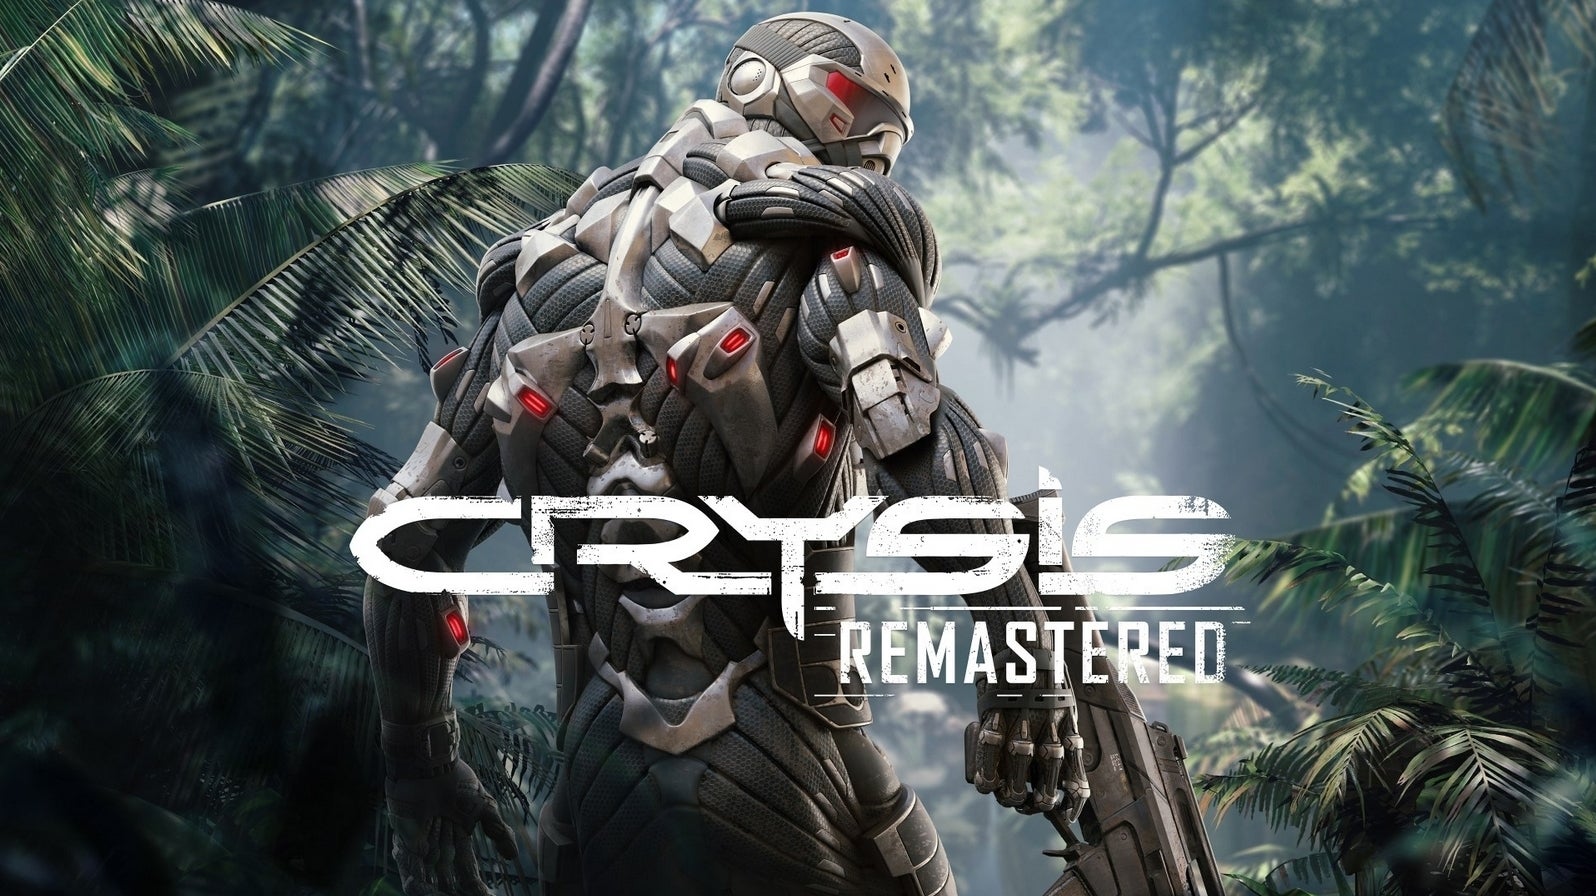 Bilder zu Crysis Remastered: Release-Termin und erste Screenshots geleakt